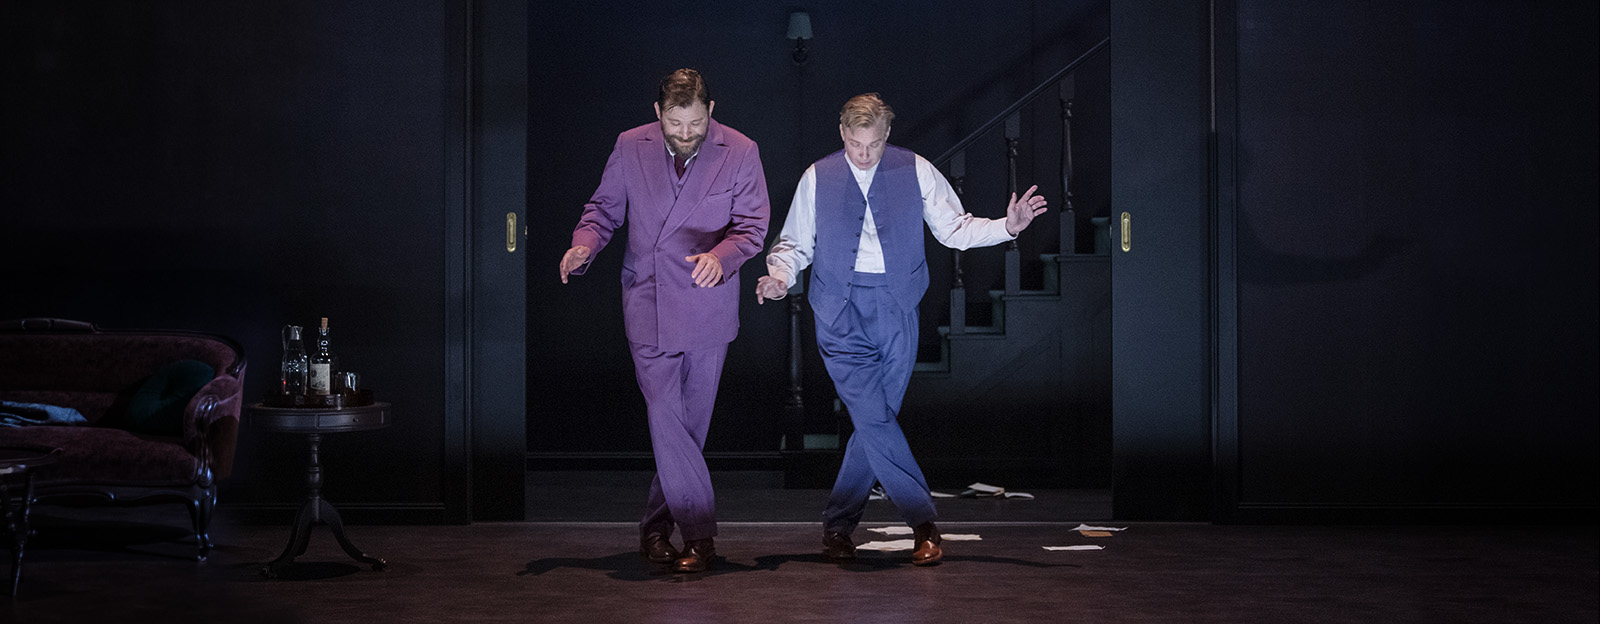 Föreställningsbild från Lång dags färd mot natt, på bilden ses Eric Ericson och Fredrik Evers som bröderna i pjäsen.